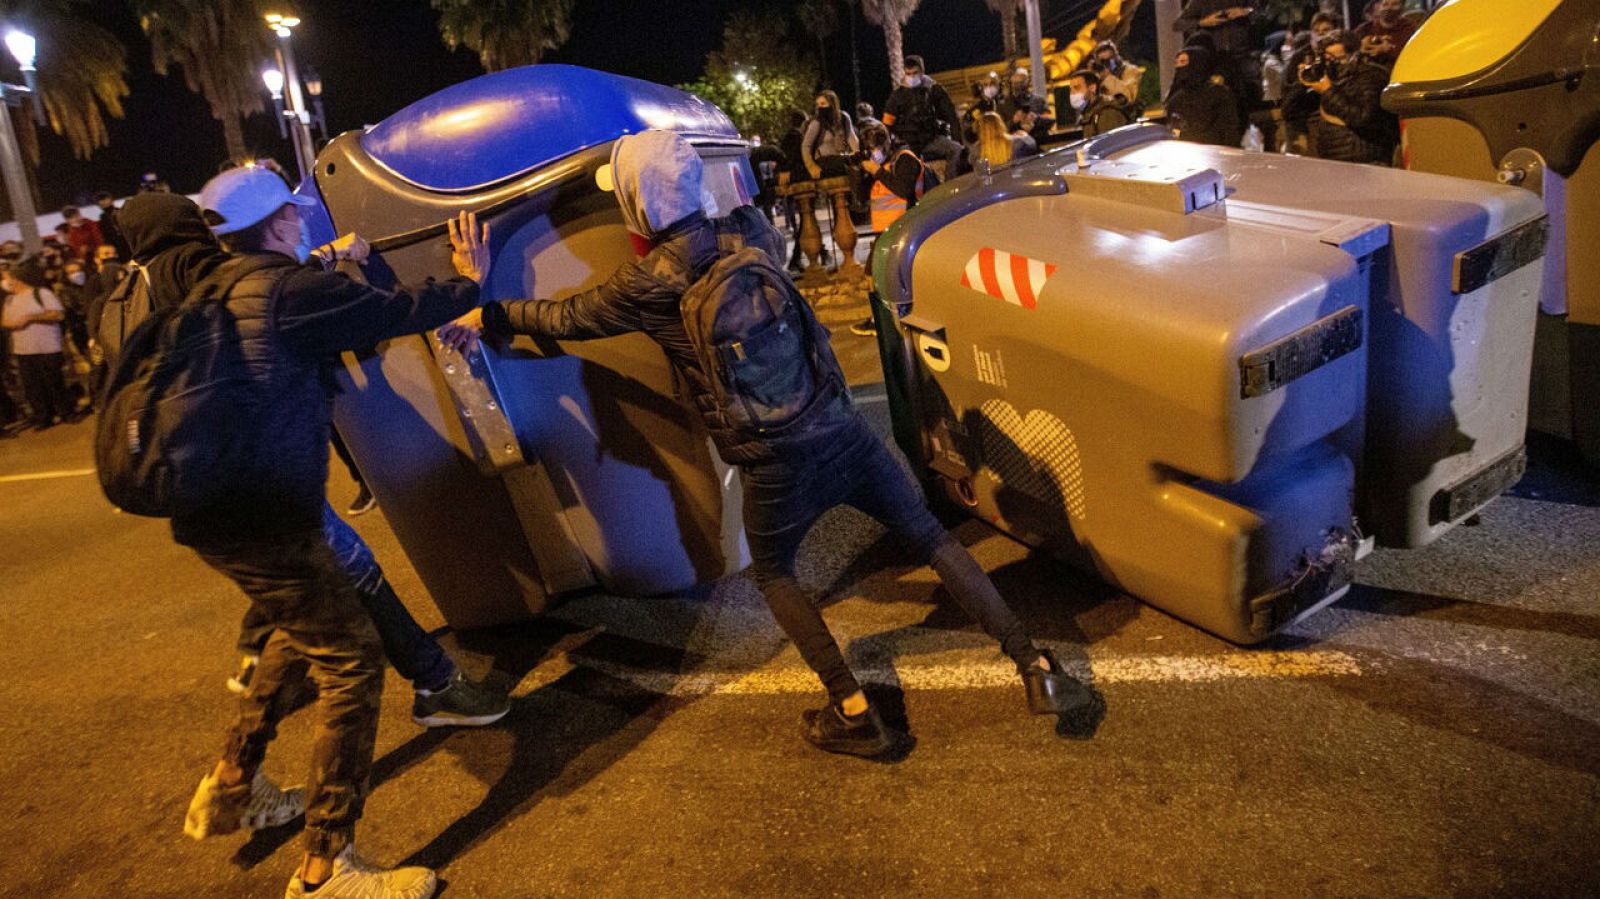 Imagen de los disturbios producidos en Barcelona durante las concentraciones convocadas por los CDR, en el aniversario de las condenas de prisión a los principales lideres del movimiento independentista.